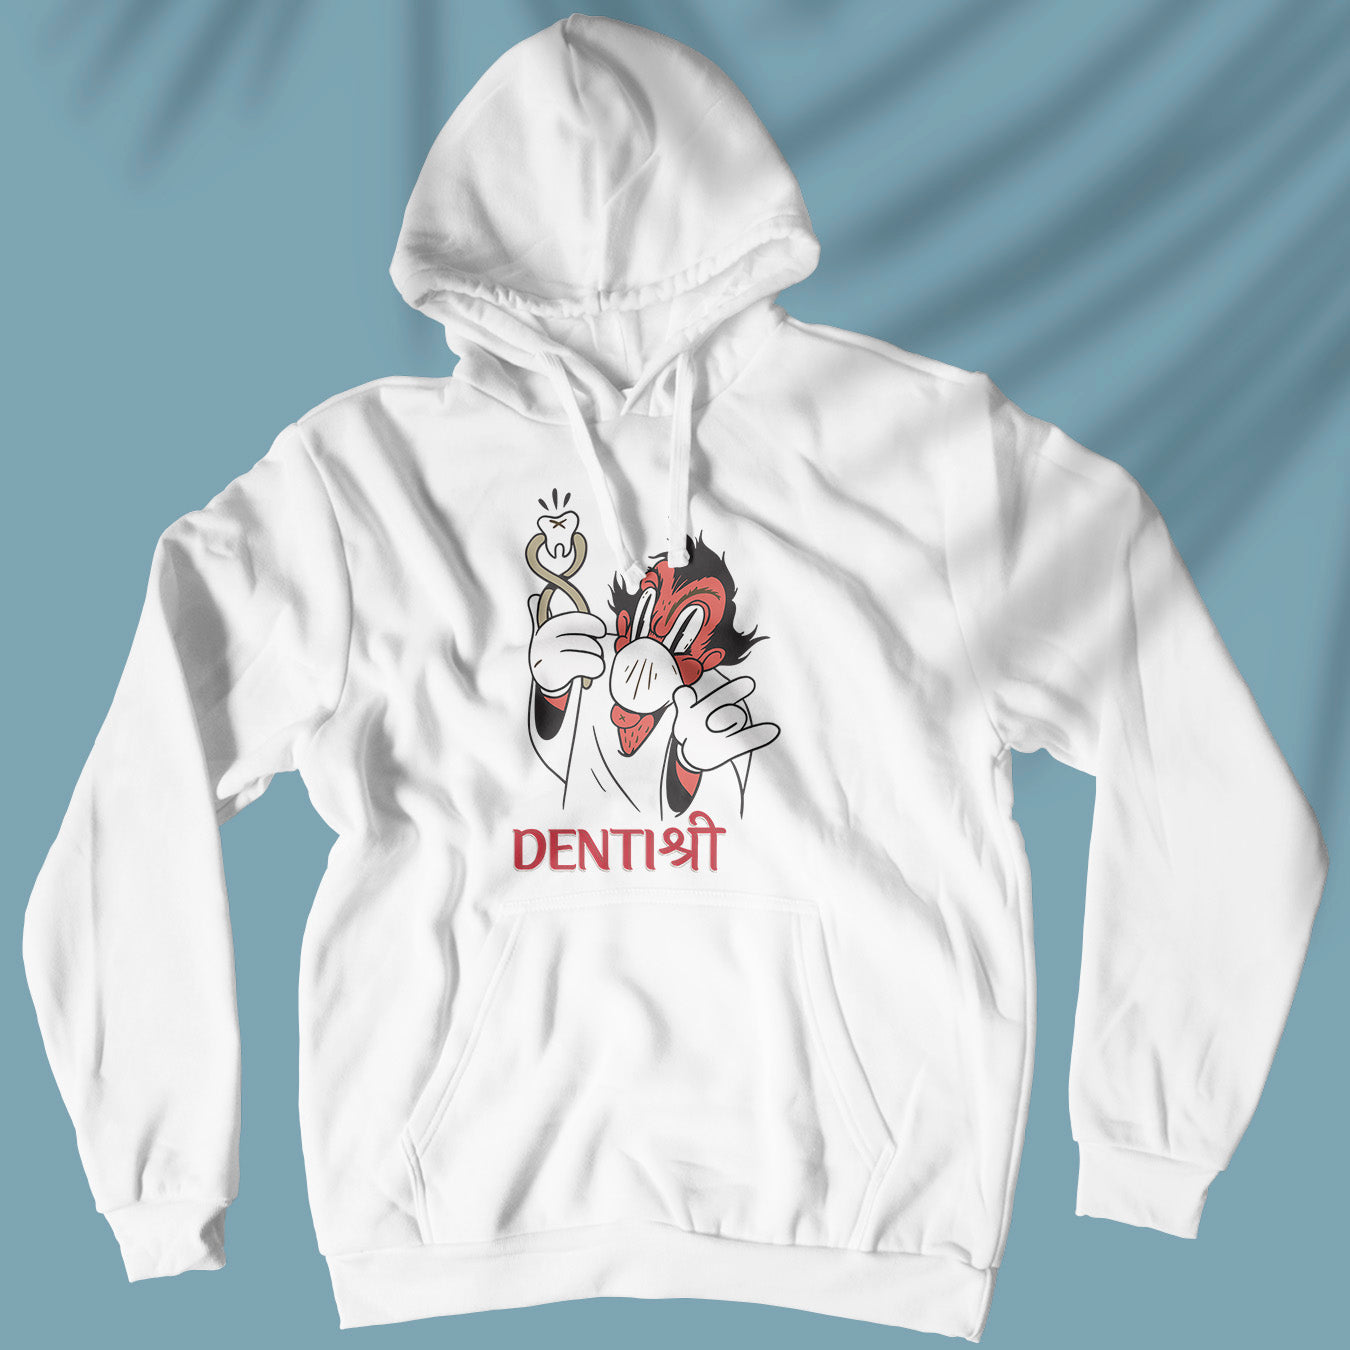 Denti-shree - Gentleman Dentist - Hoodie